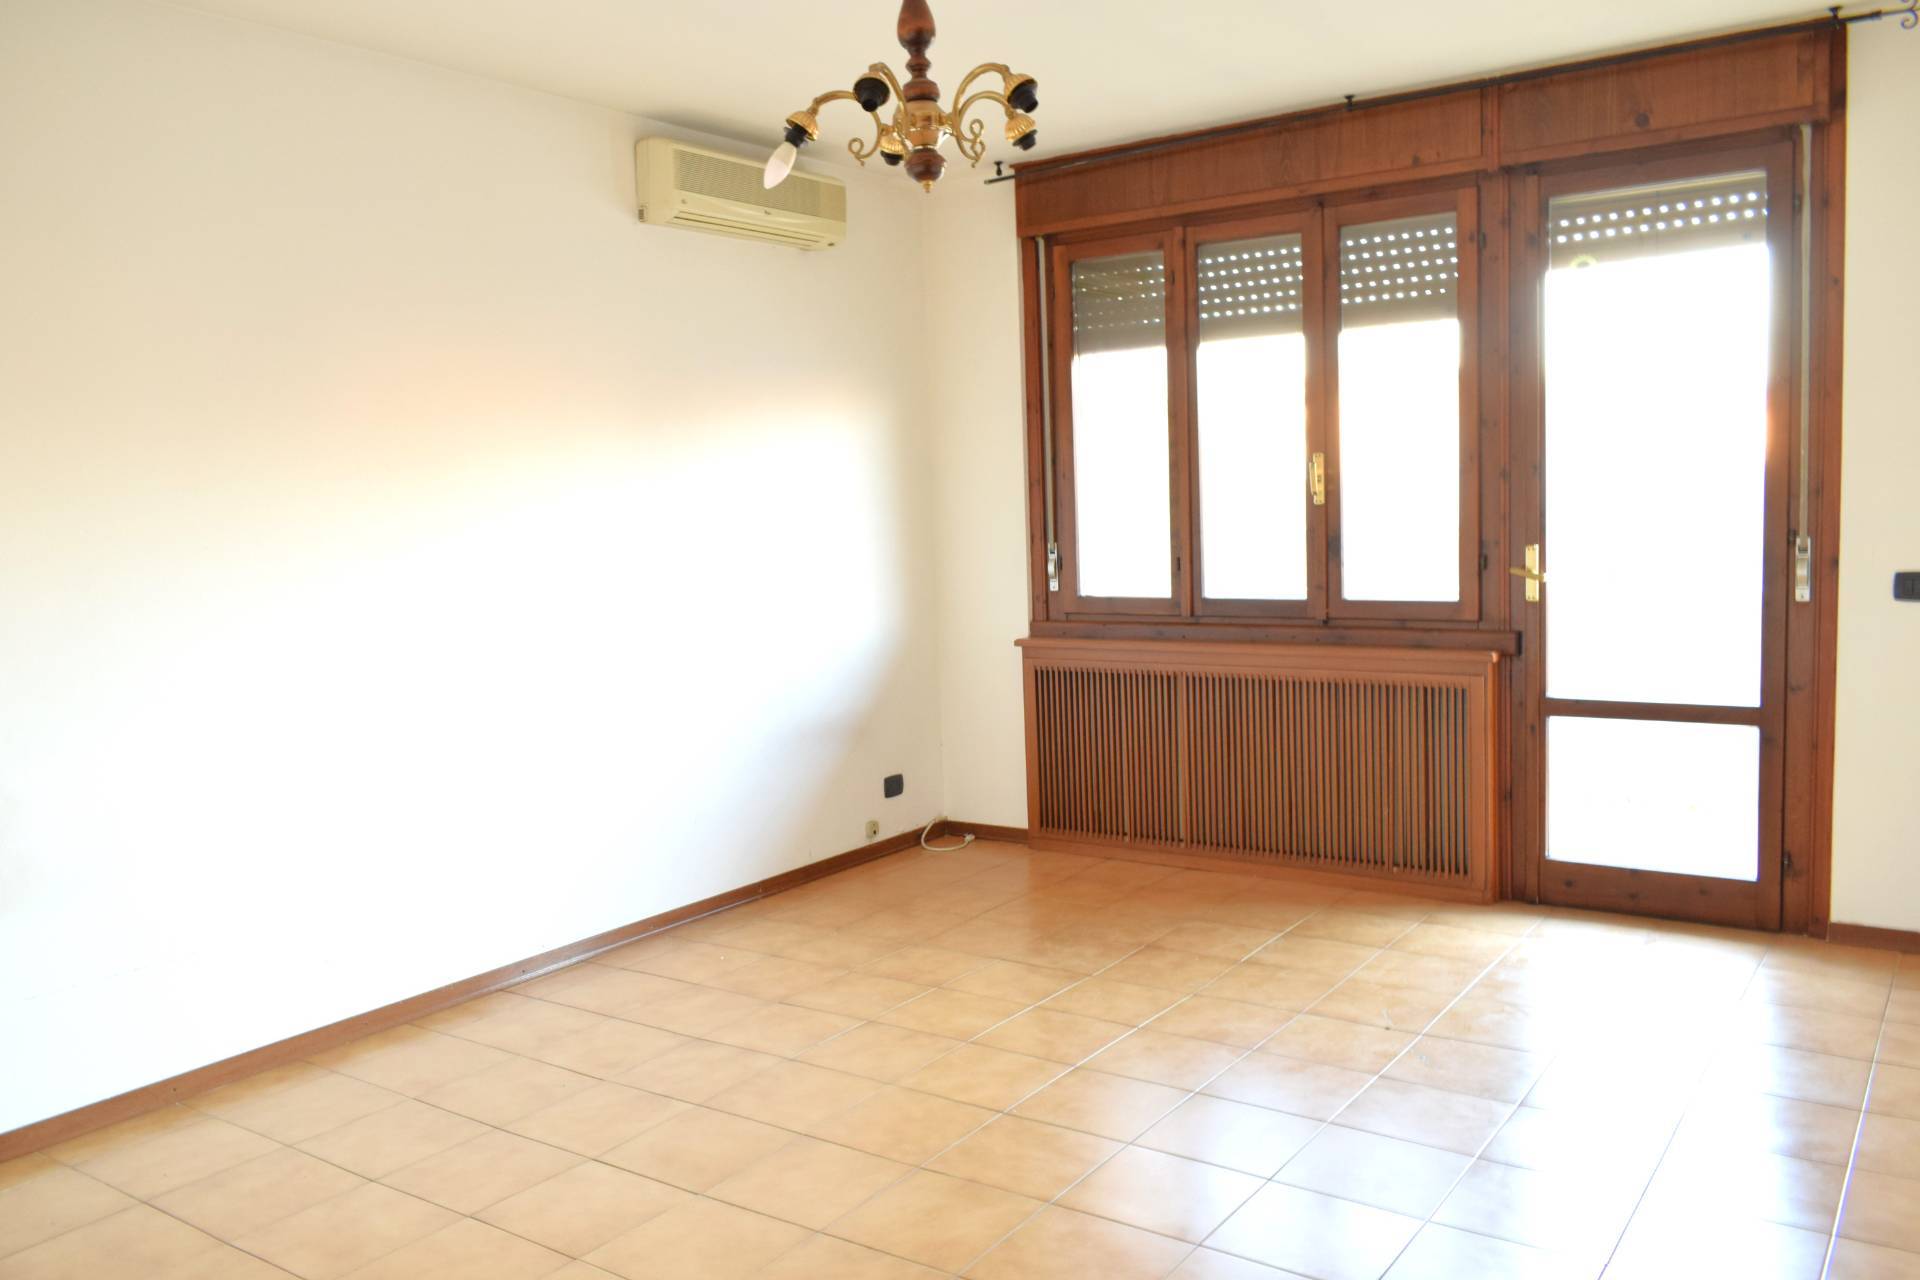 Appartamento in vendita a Vigasio, 4 locali, prezzo € 144.000 | PortaleAgenzieImmobiliari.it